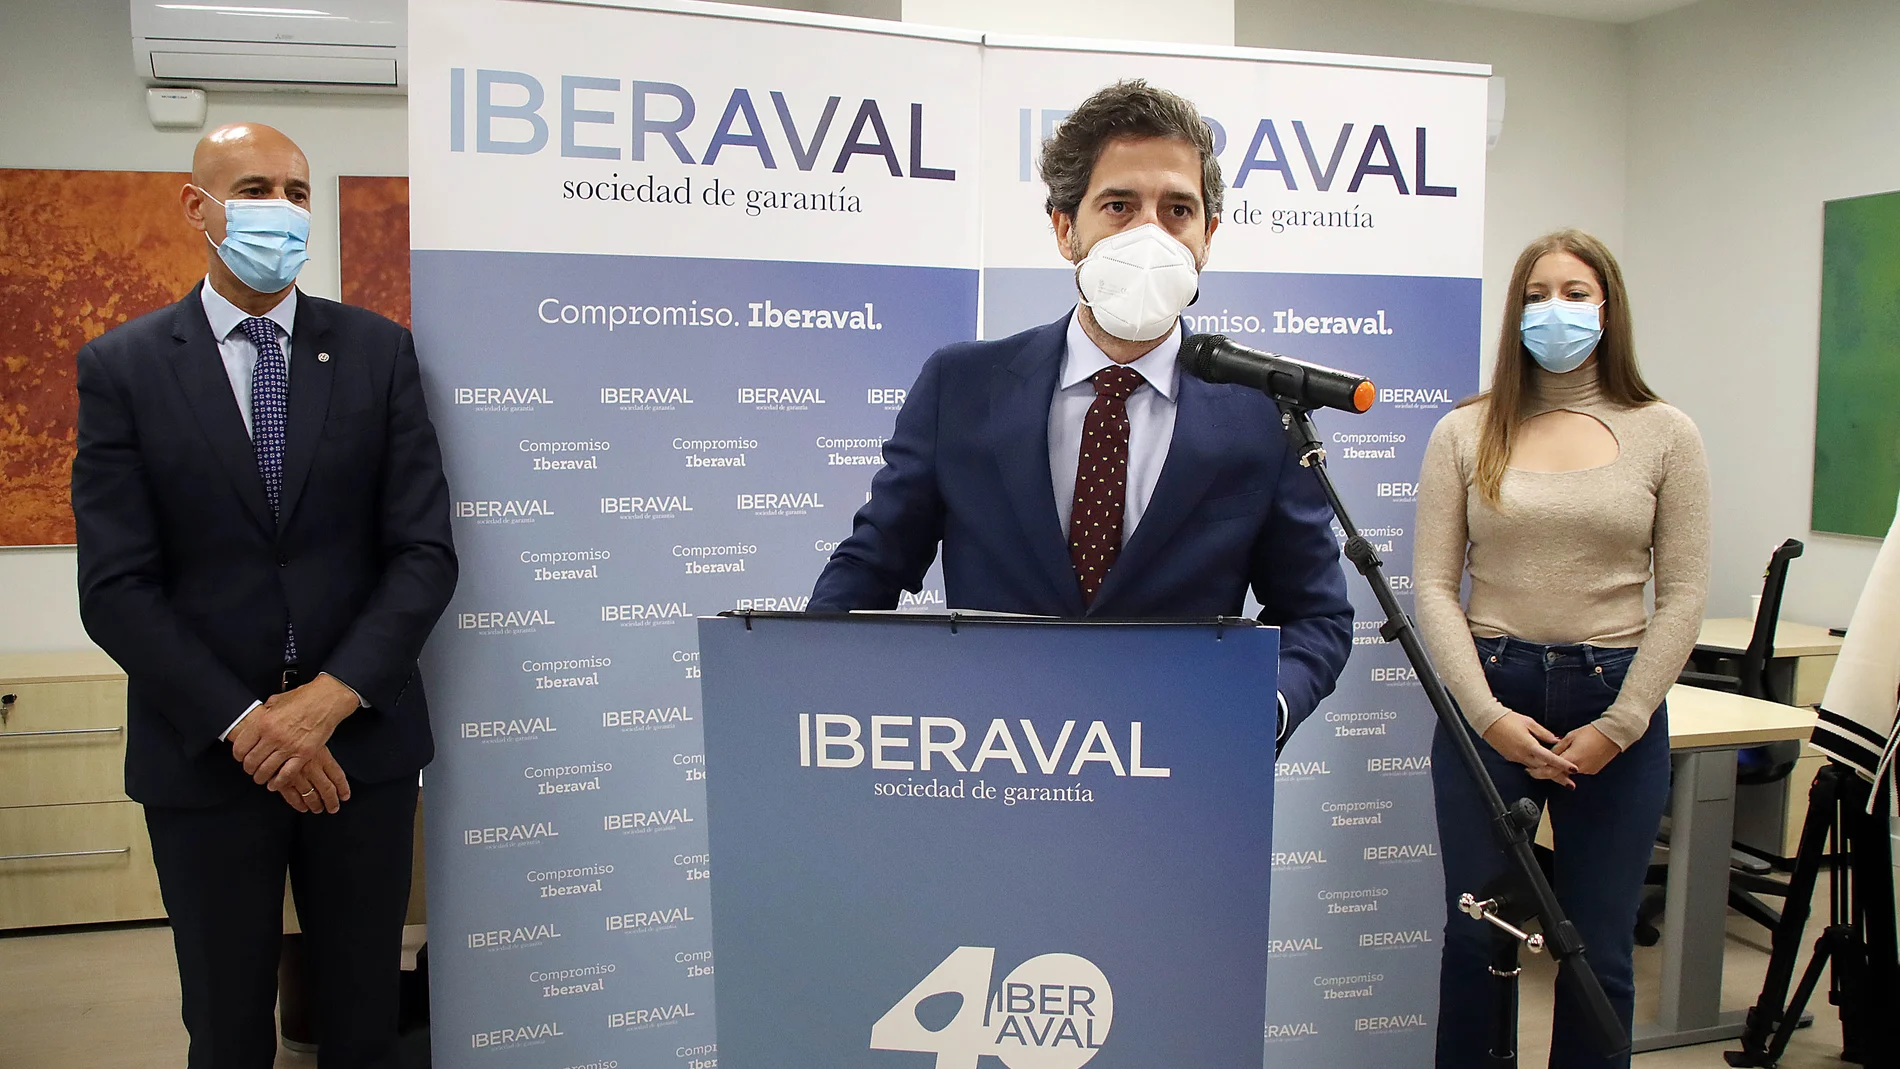 El presidente de Iberaval, César Pontvianne, inaugura la sede leonesa, con el alcalde, José Antonio Diez y la delegada territorial, Ester Muñoz